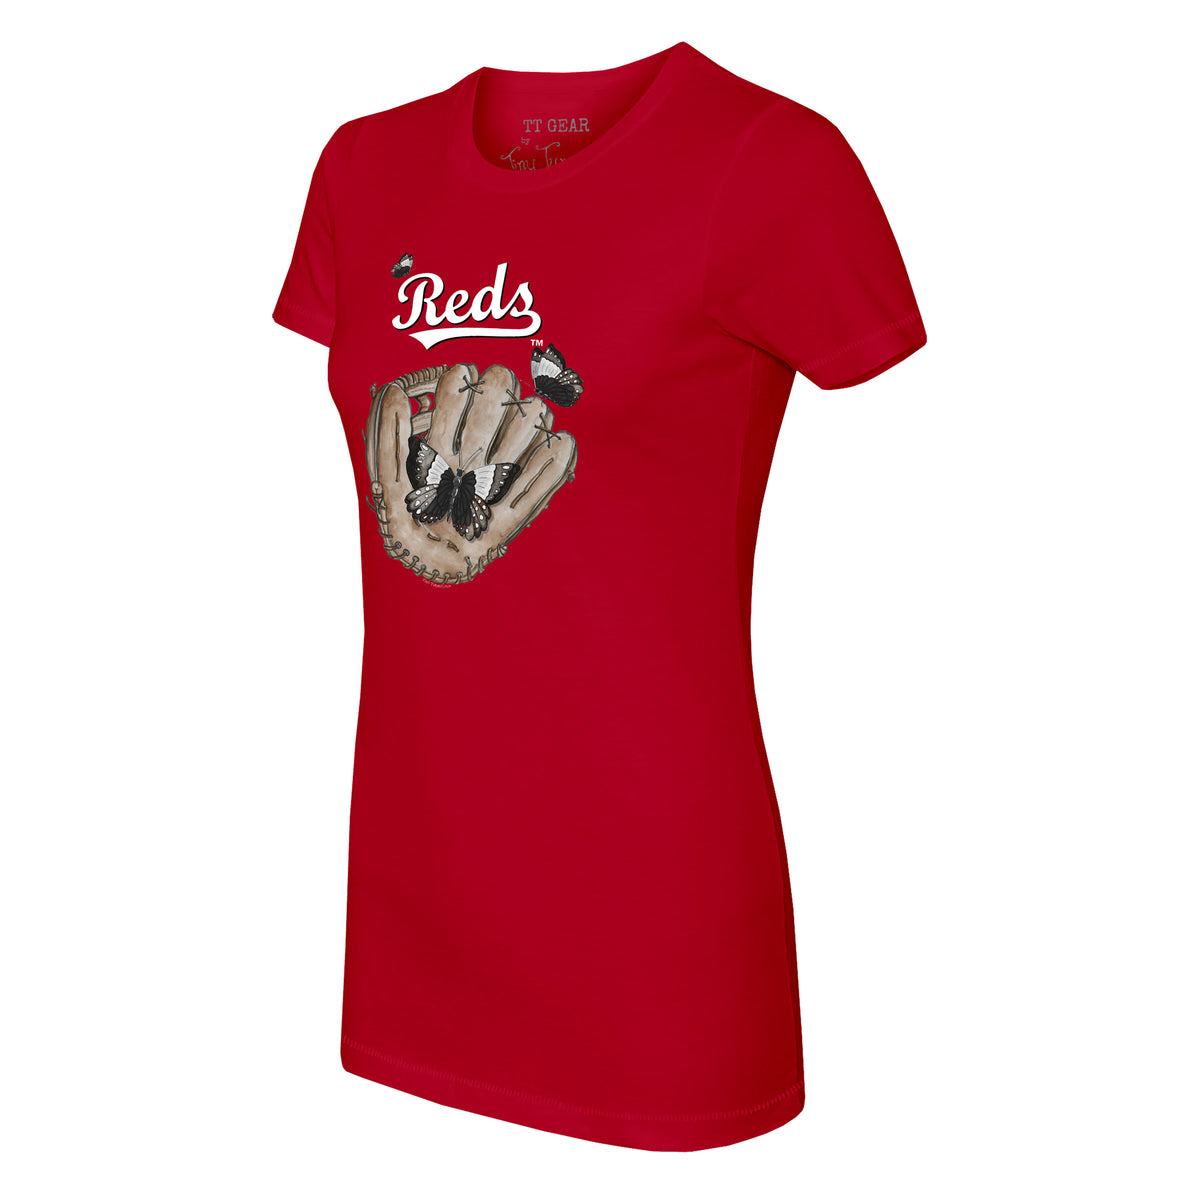 Cincinnati Reds Butterfly Glove Tee Shirt